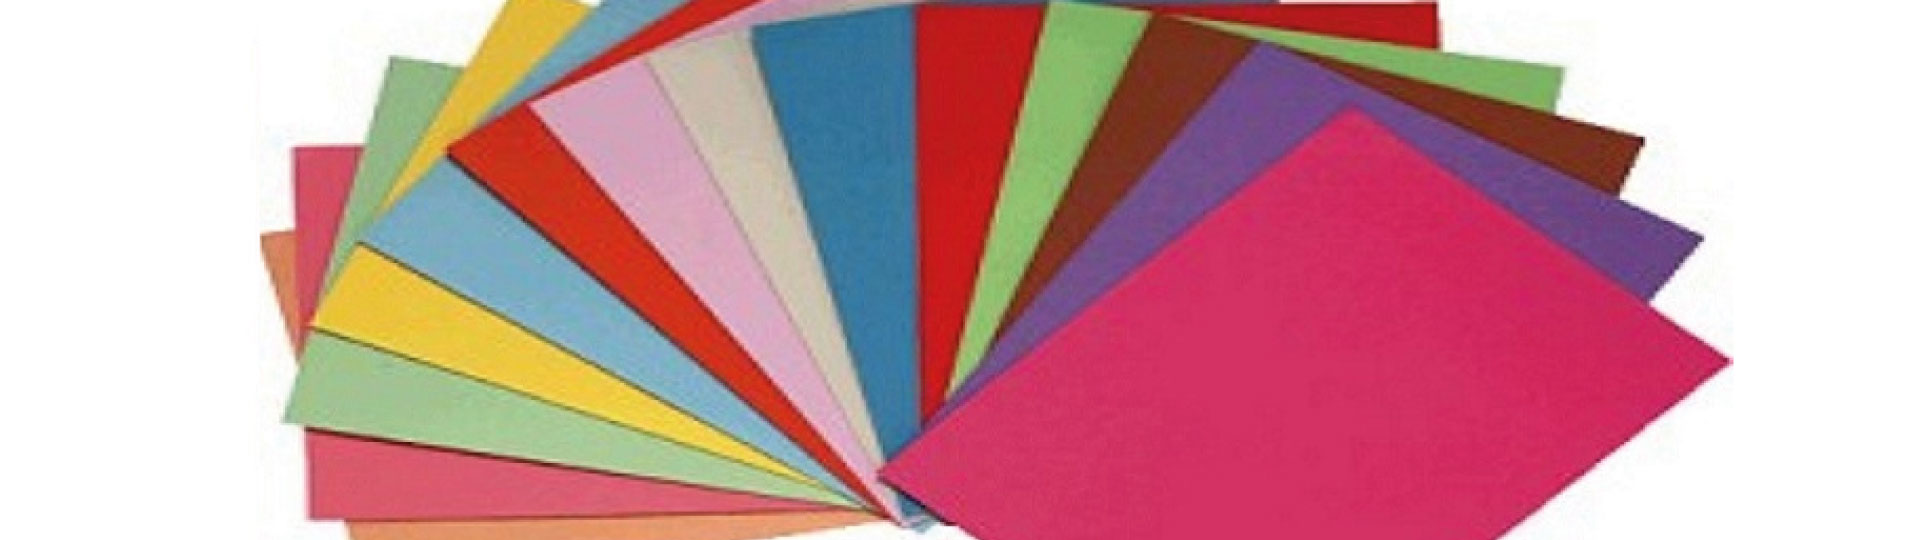 Folios de colores